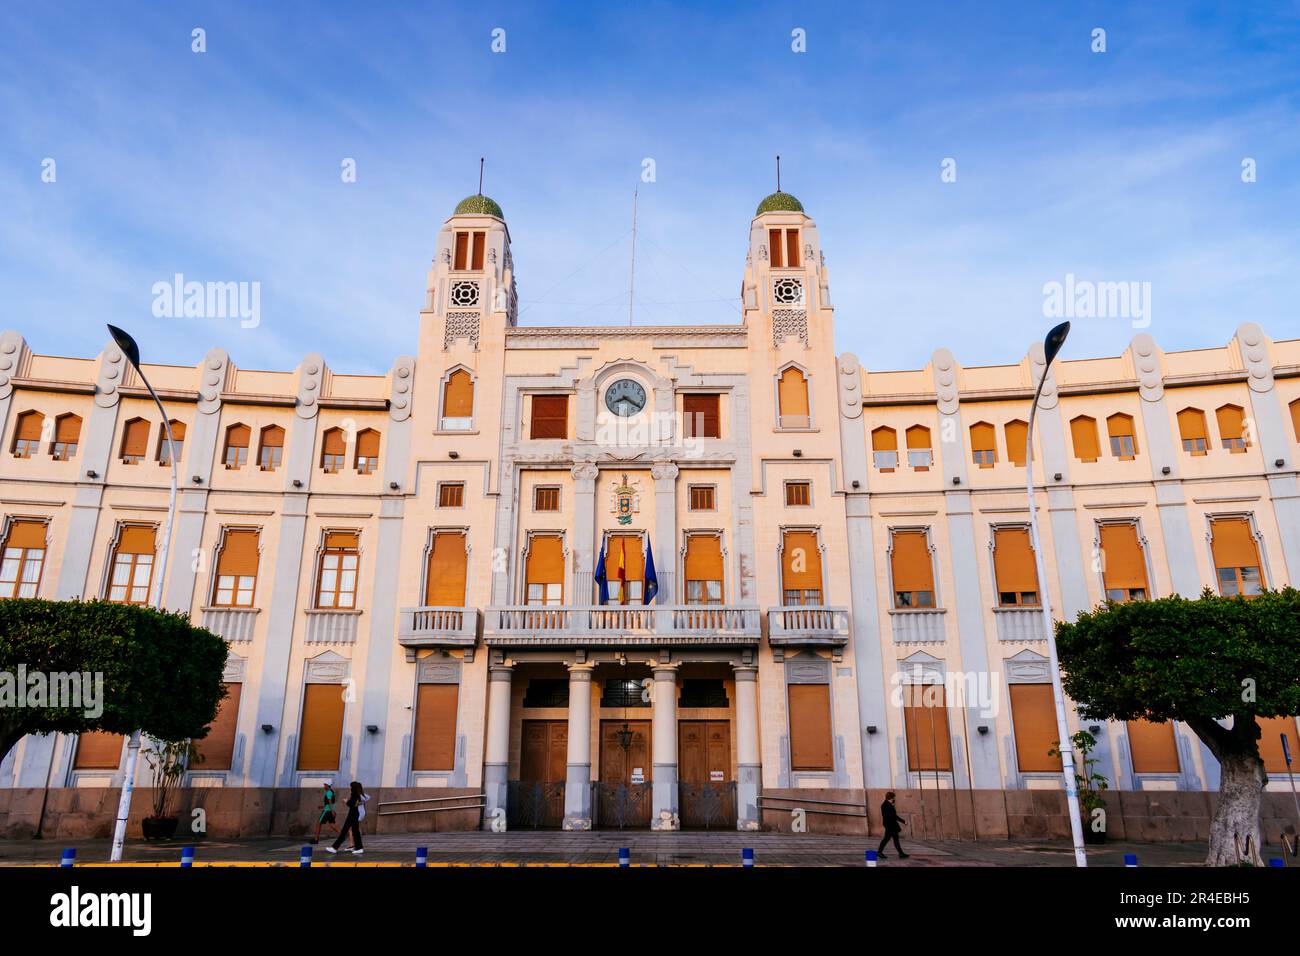 Le Palais de l'Assemblée, anciennement le Palais municipal, parfois appelé l'Hôtel de ville, est un bâtiment art déco de l'agrandissement moderniste de t Banque D'Images